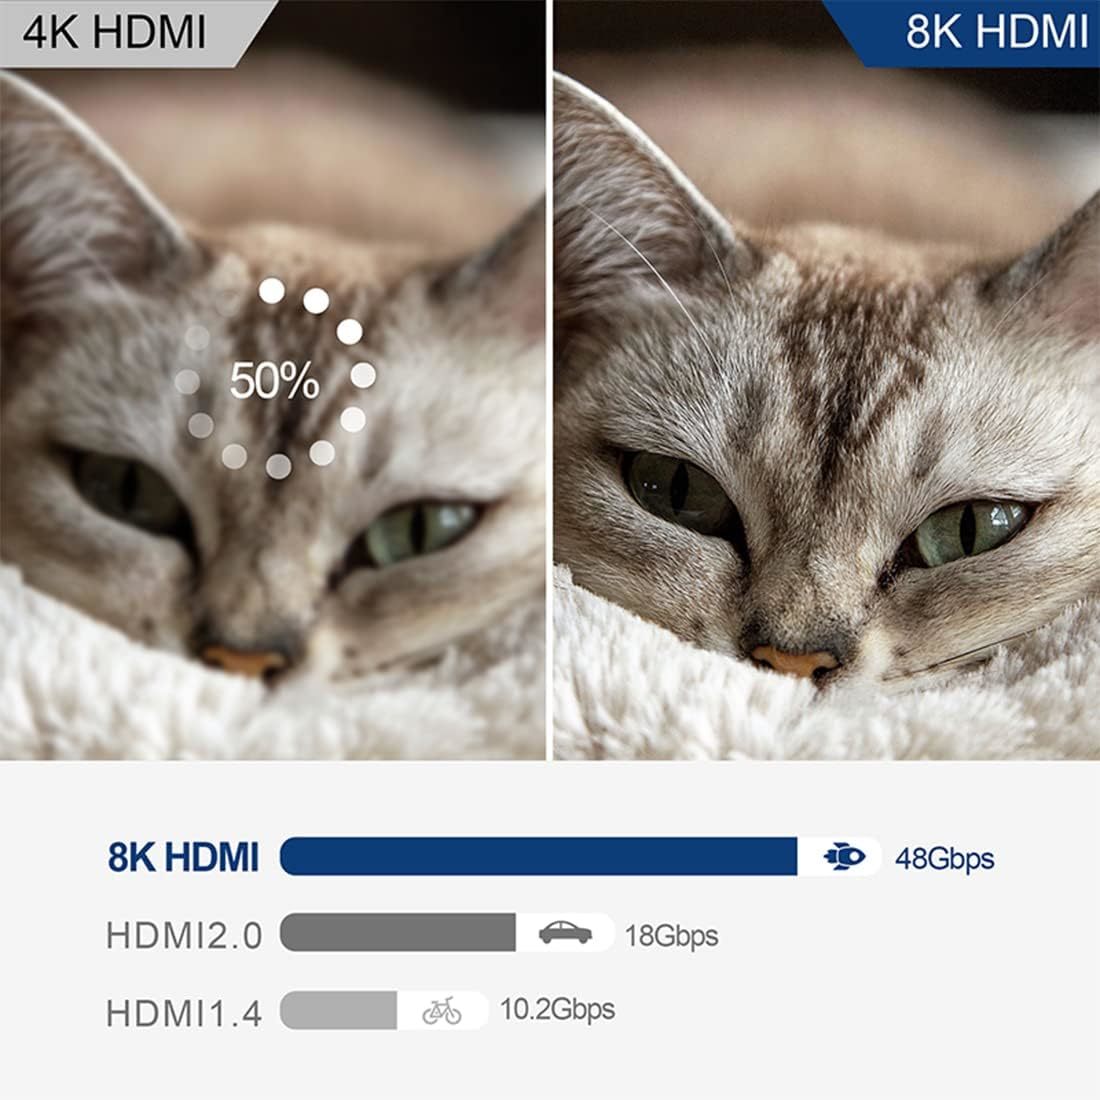 8K HDMI切替器 3入力1出力 hdmi 切り替え器 3X1 IRリモコン付き 2.1 HDMI切替器 3ポート 方向性スイッチ 8K@60Hz、4K@120Hz